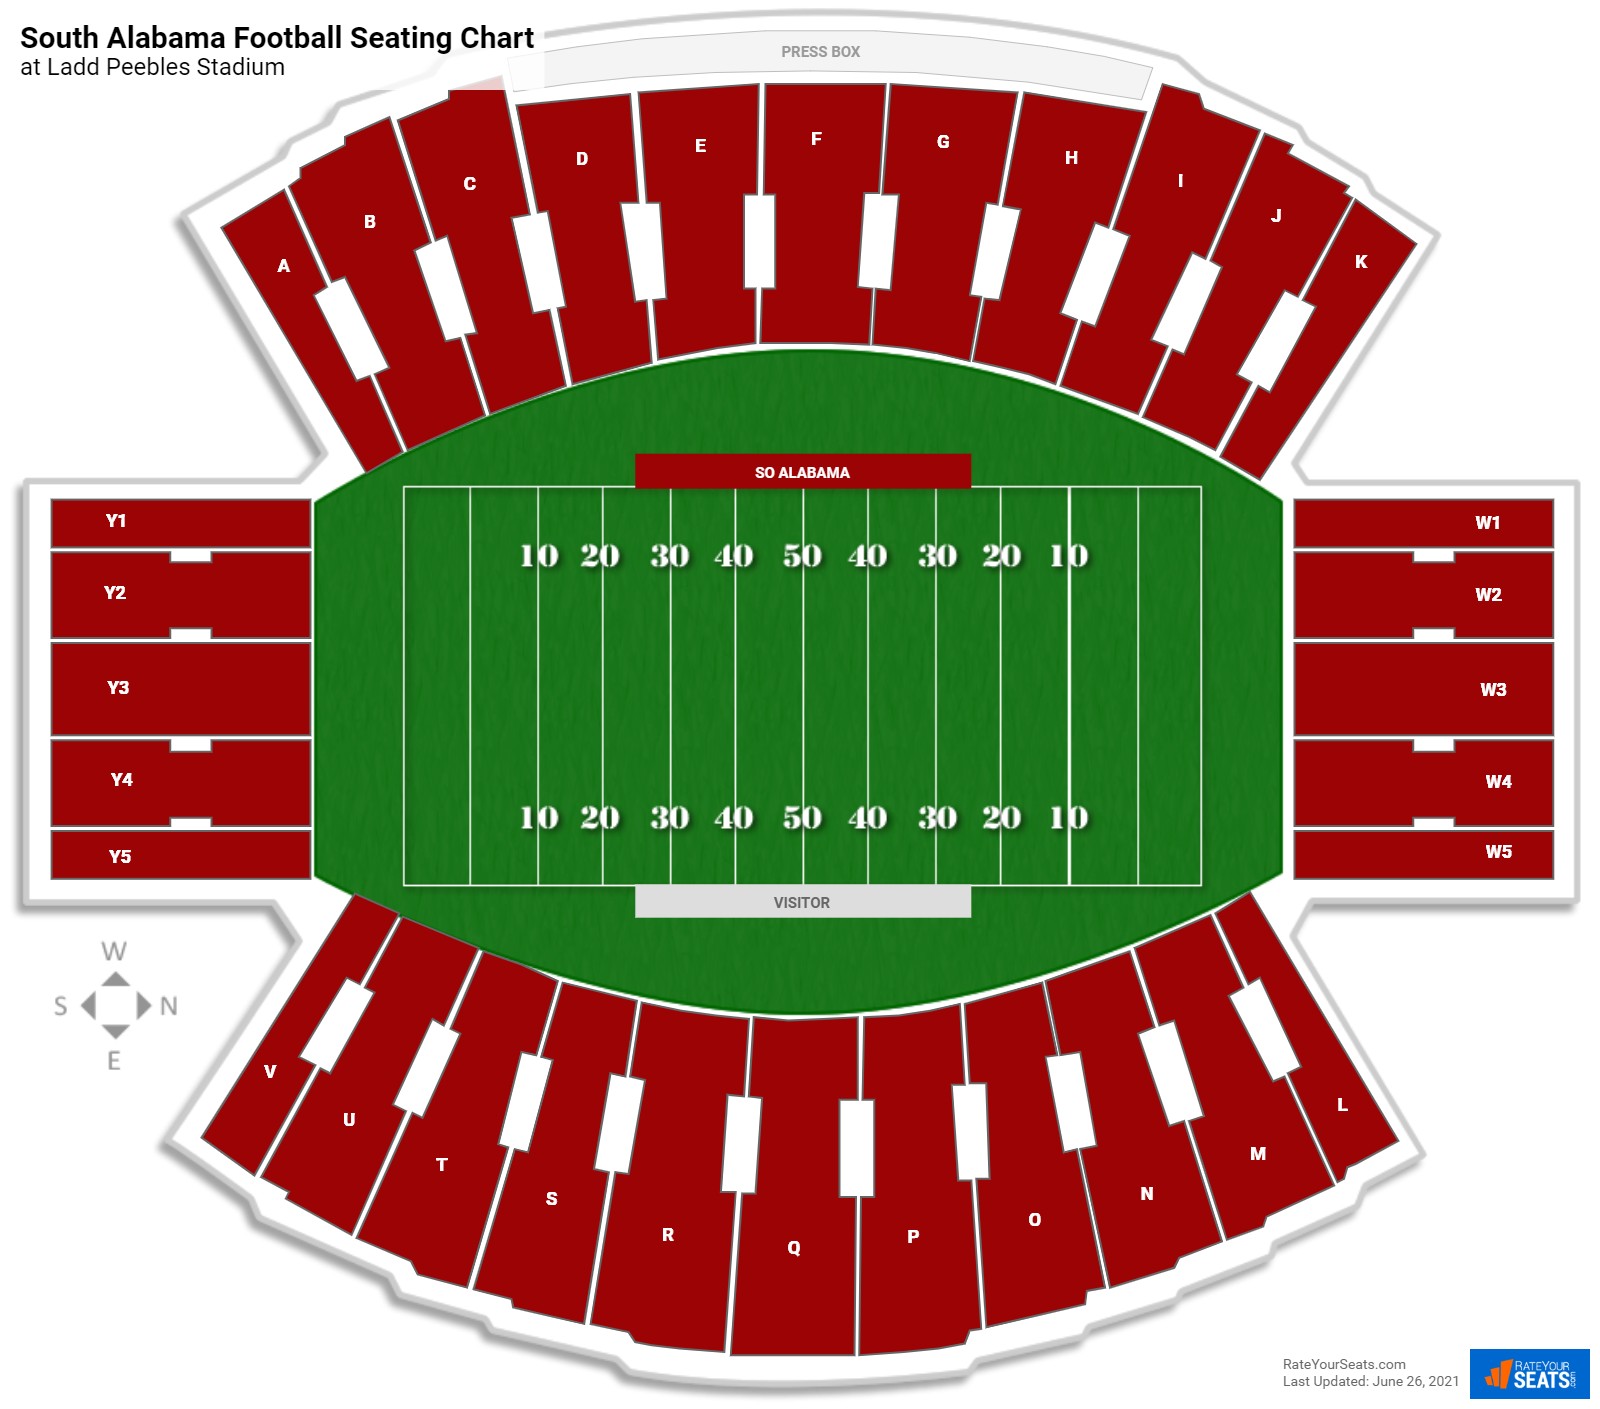 Ladd Peebles Stadium Football Seating Chart